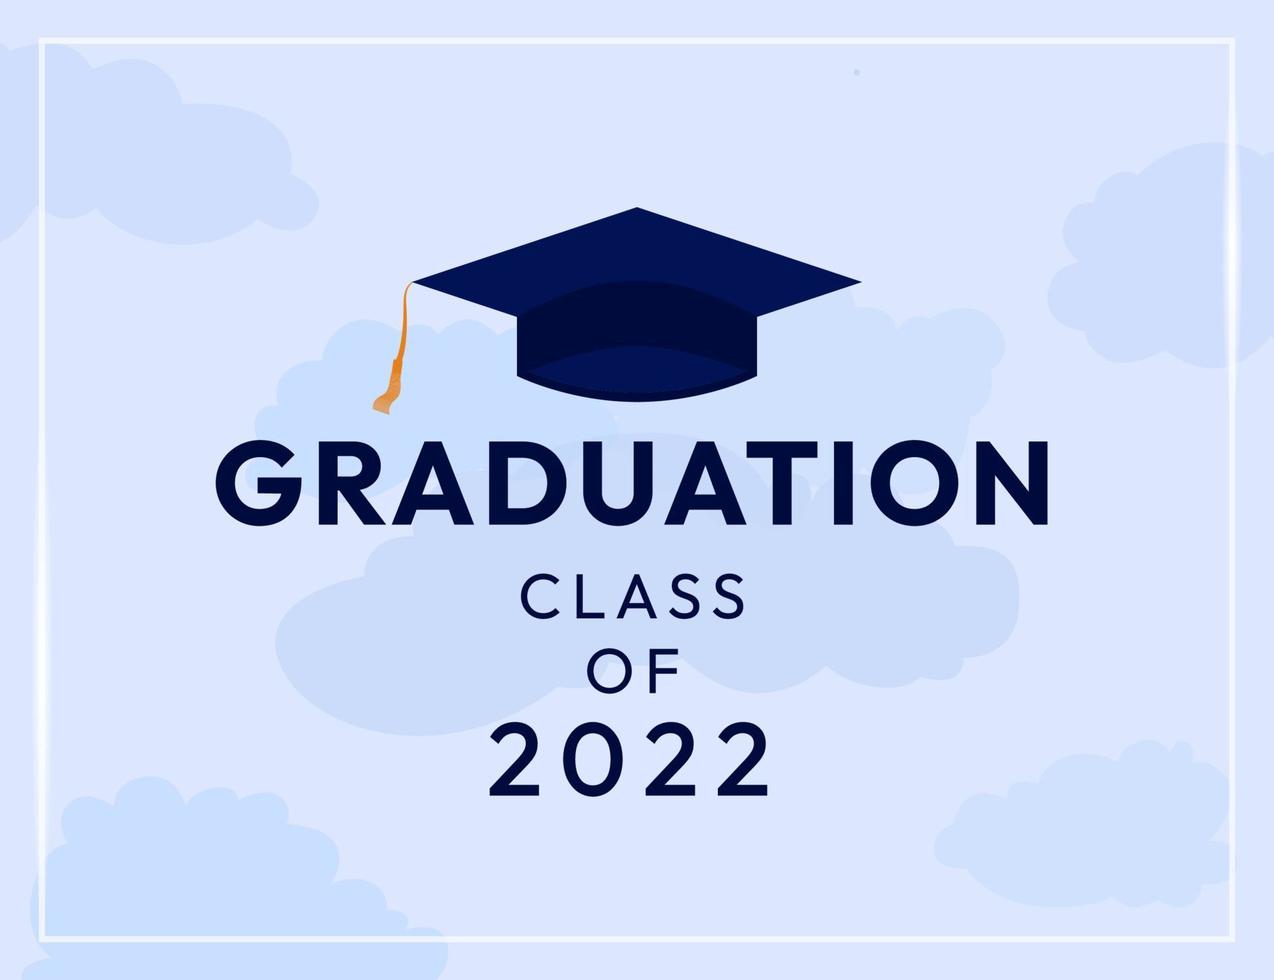 classe de fond de graduation de 2022 avec conception de vecteur de nuages et de confettis